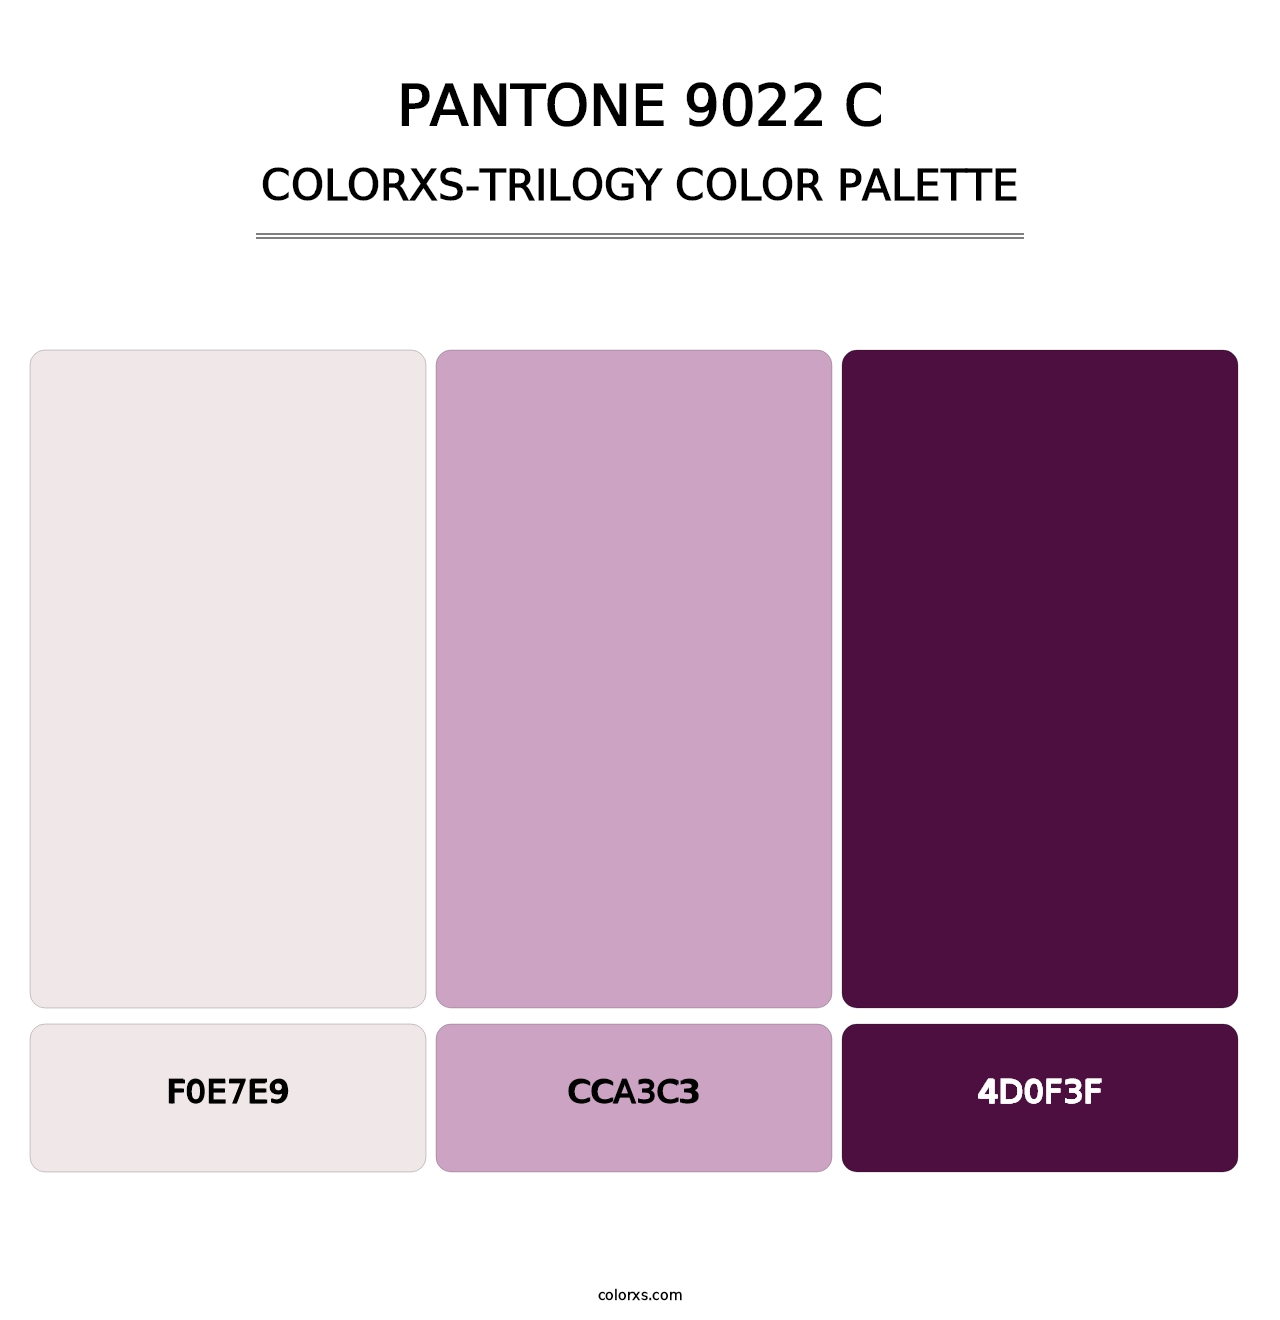 PANTONE 9022 C - Colorxs Trilogy Palette